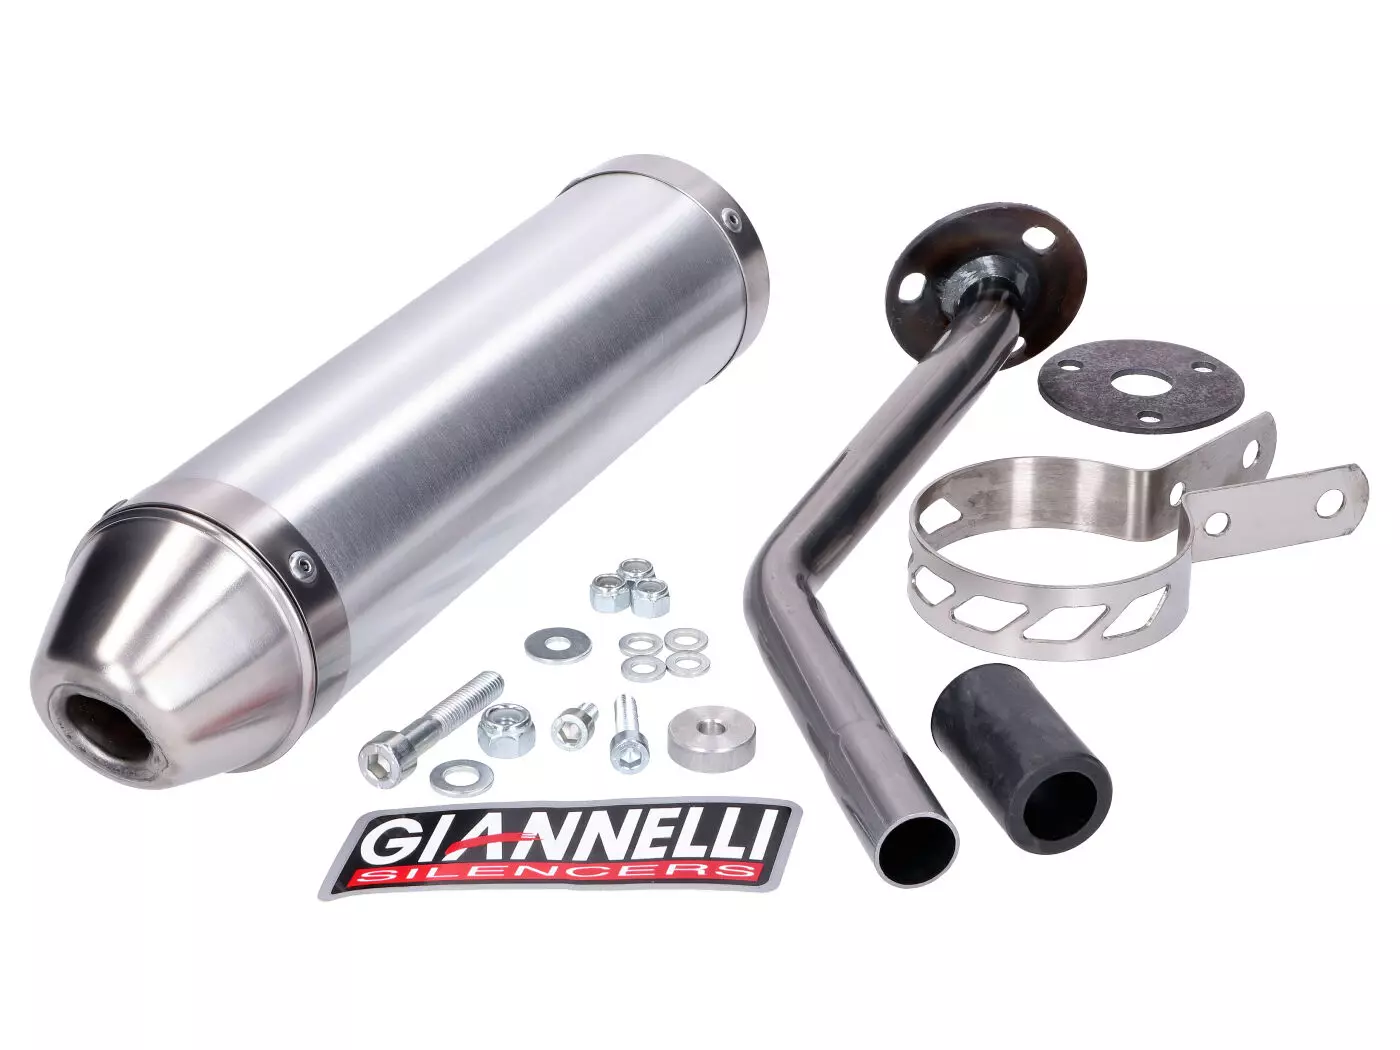 Einddemper Giannelli Aluminium voor Rieju MRX, SMX, RRX 50